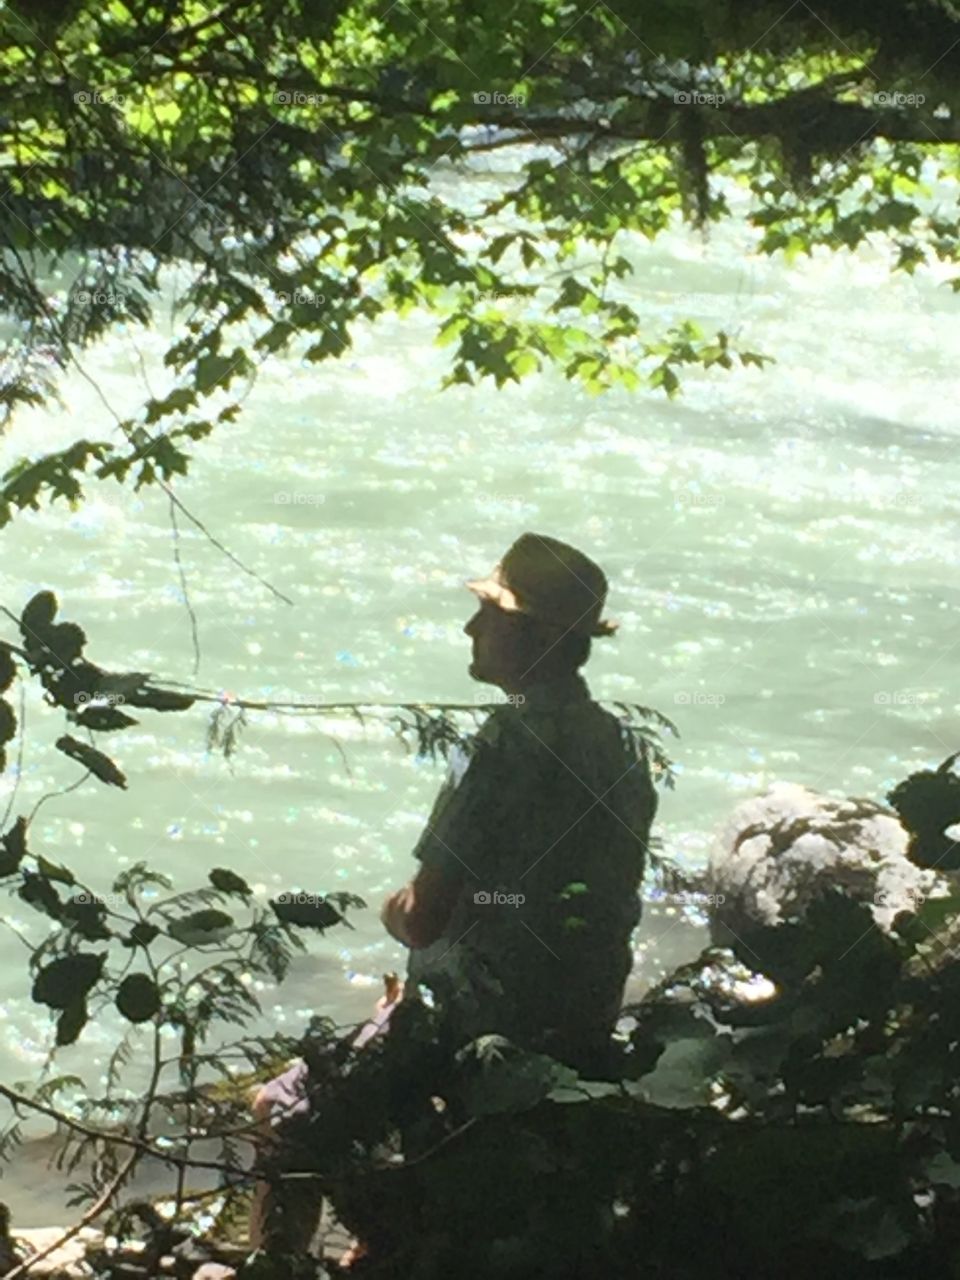 Matt by the river